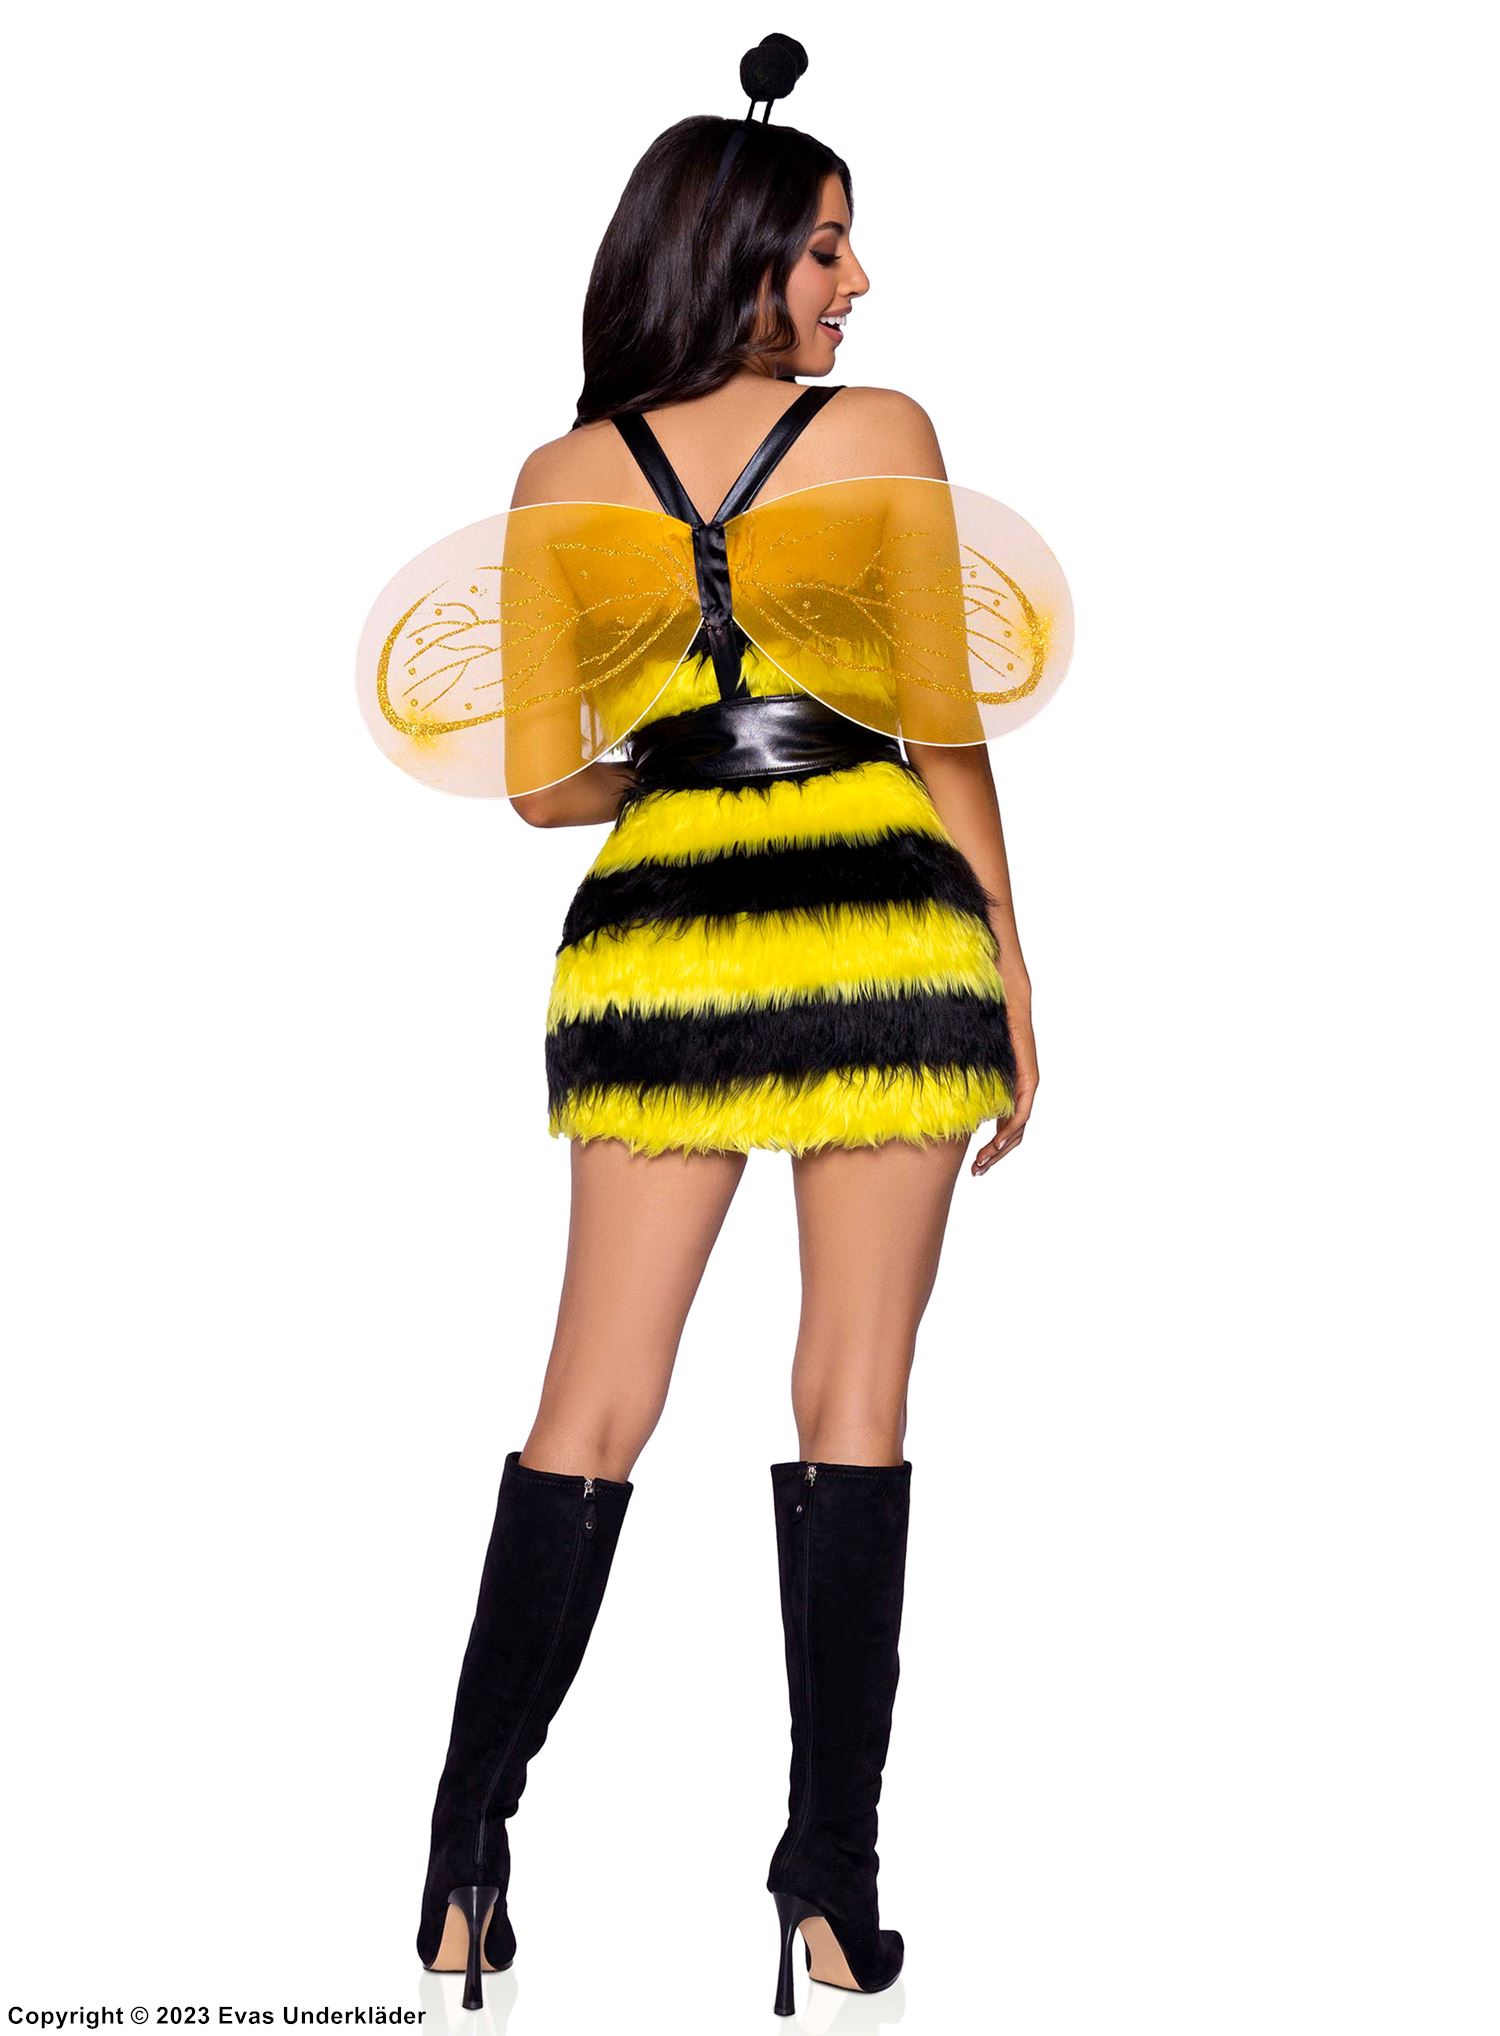 ผึ้ง, ชุดแต่งกายแบบชุดกระโปรง, ปีก, ลายเส้นแนวนอน